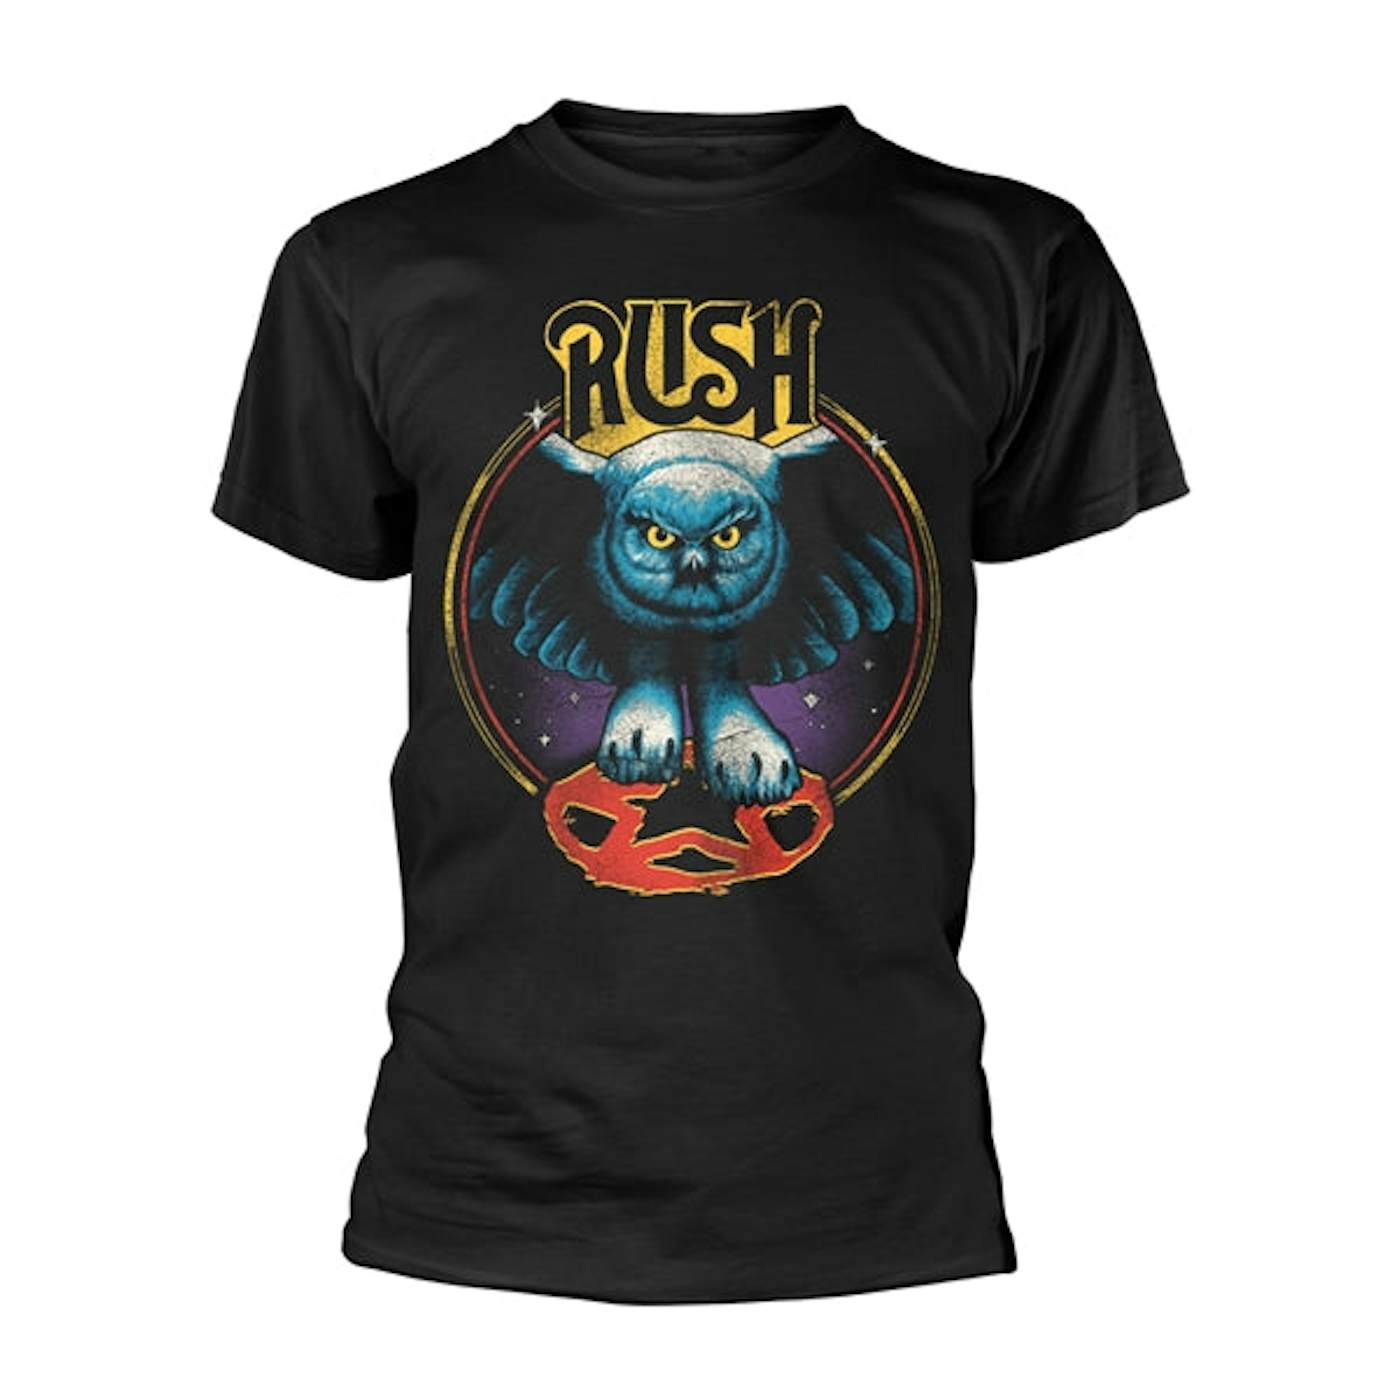 Rush T Shirt - Owl Star